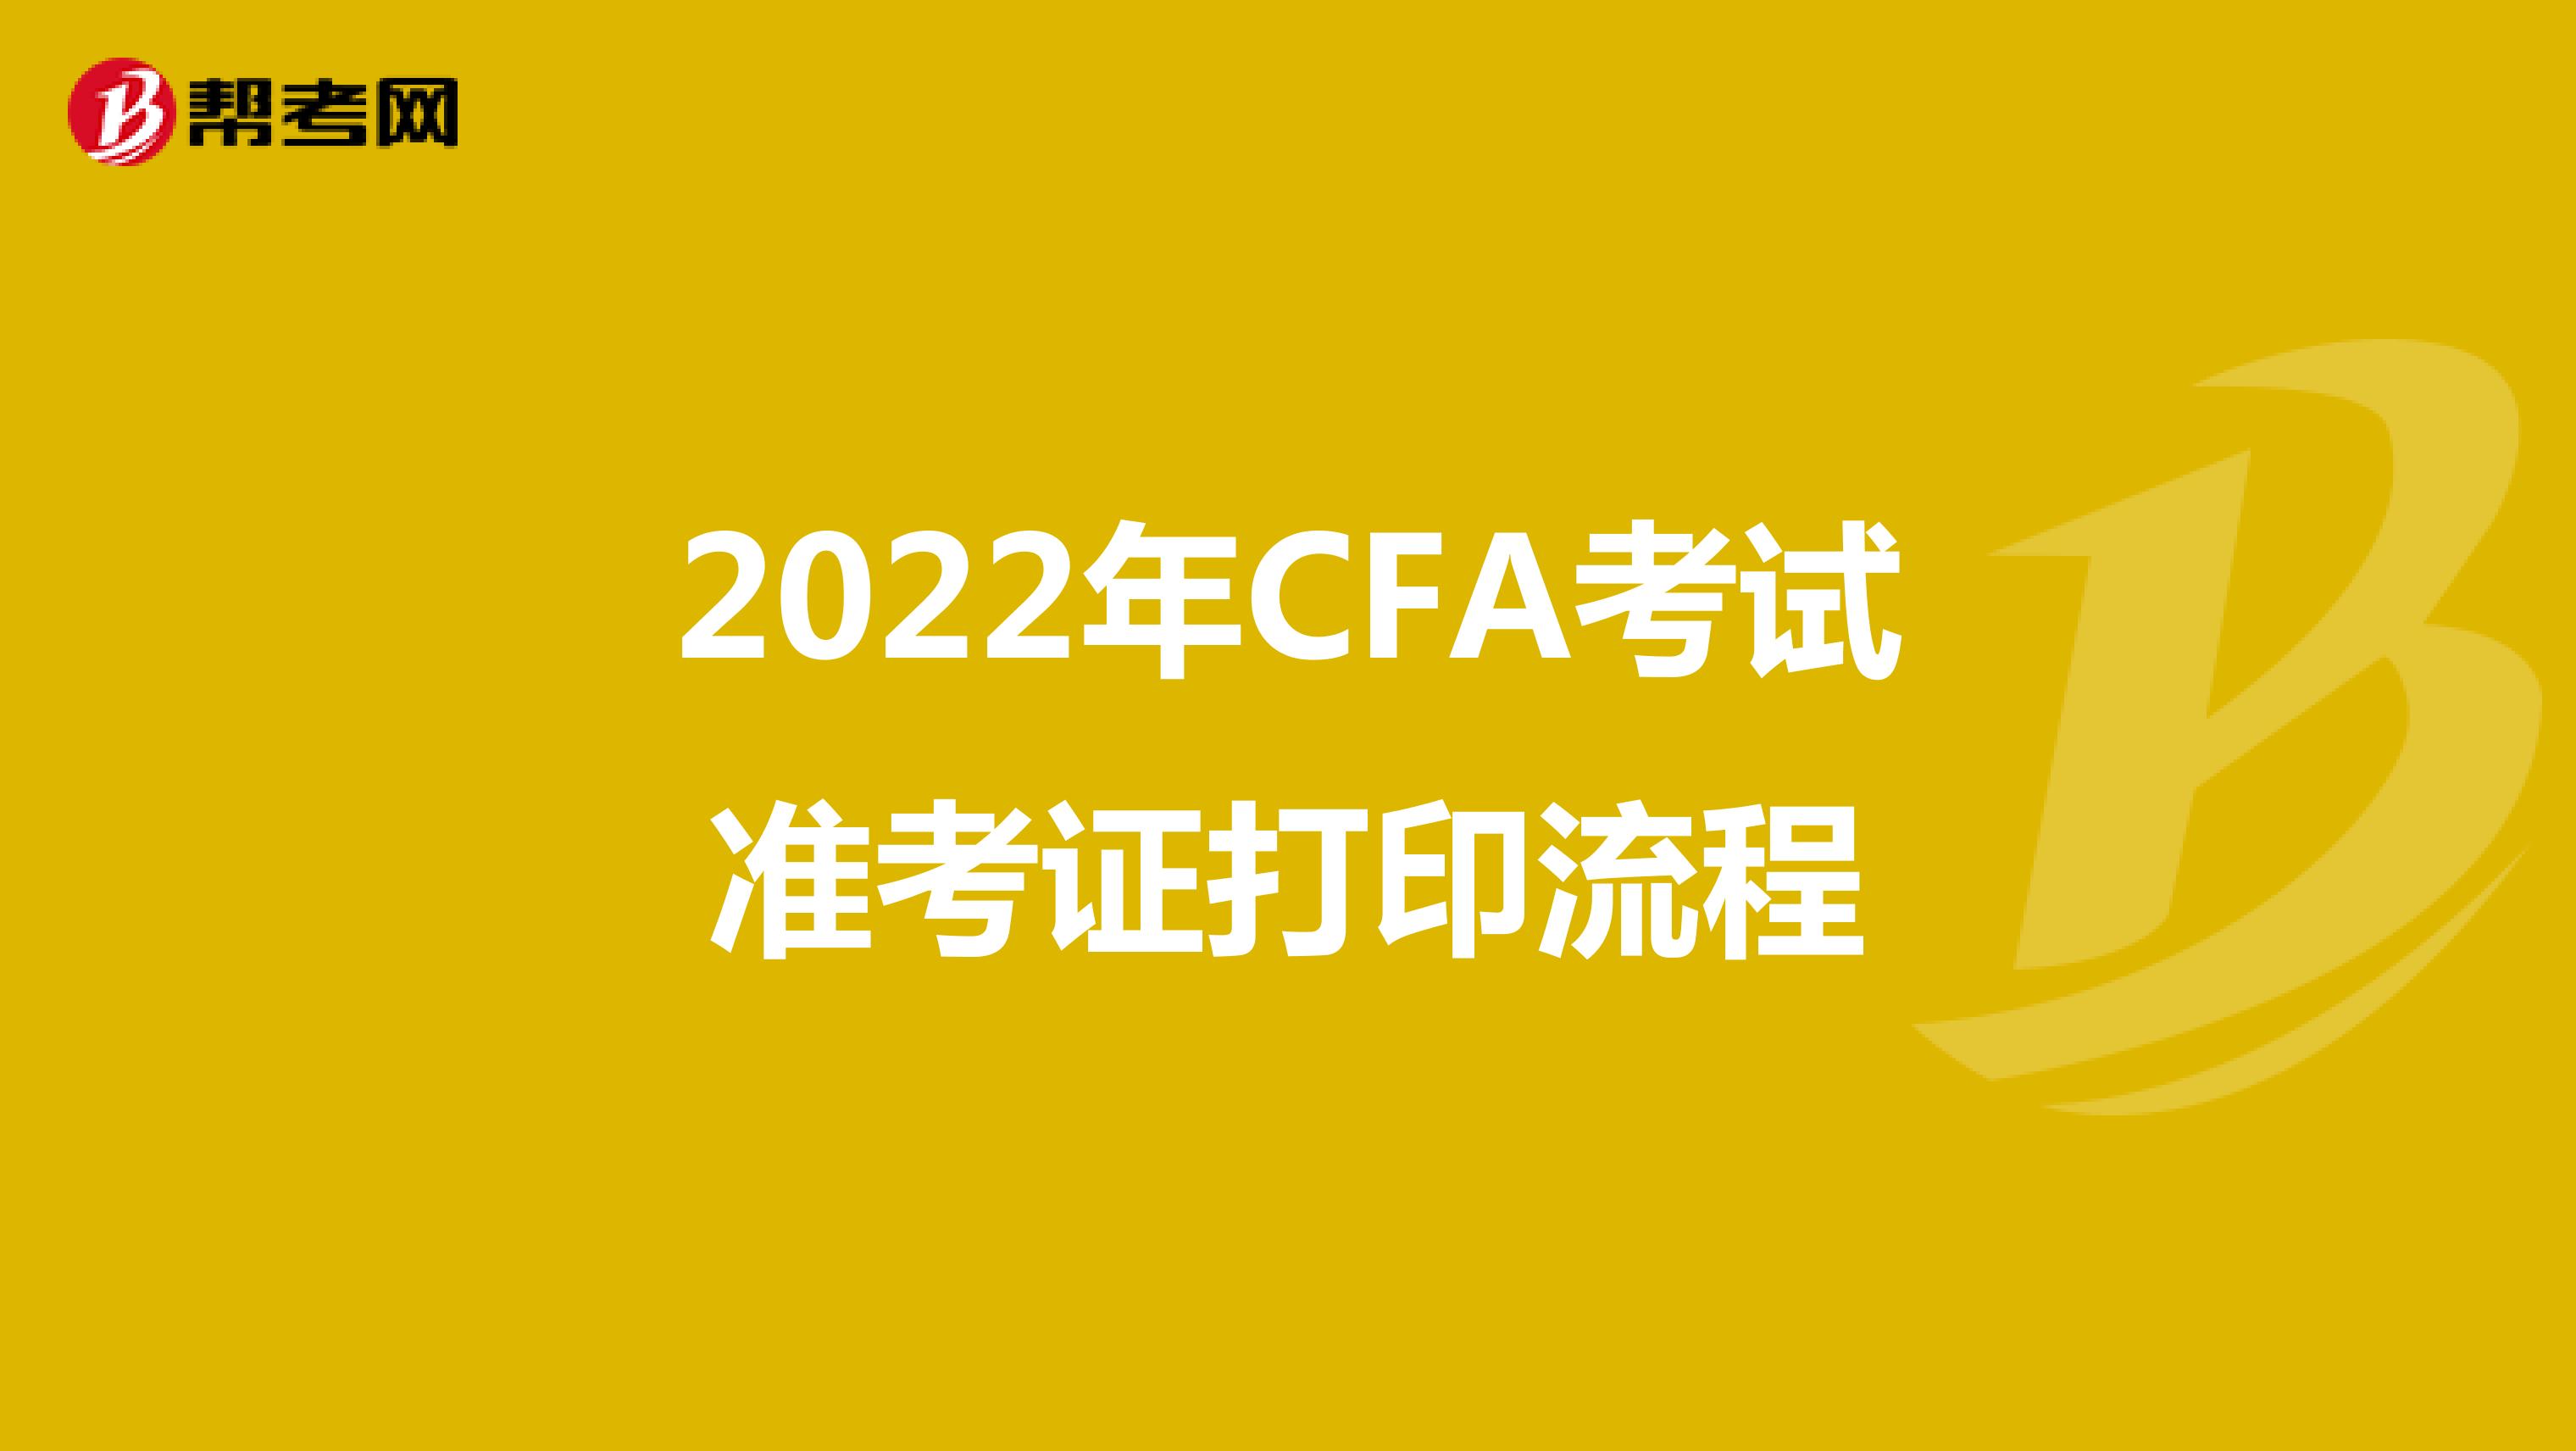 2022年CFA考試準考證打印流程